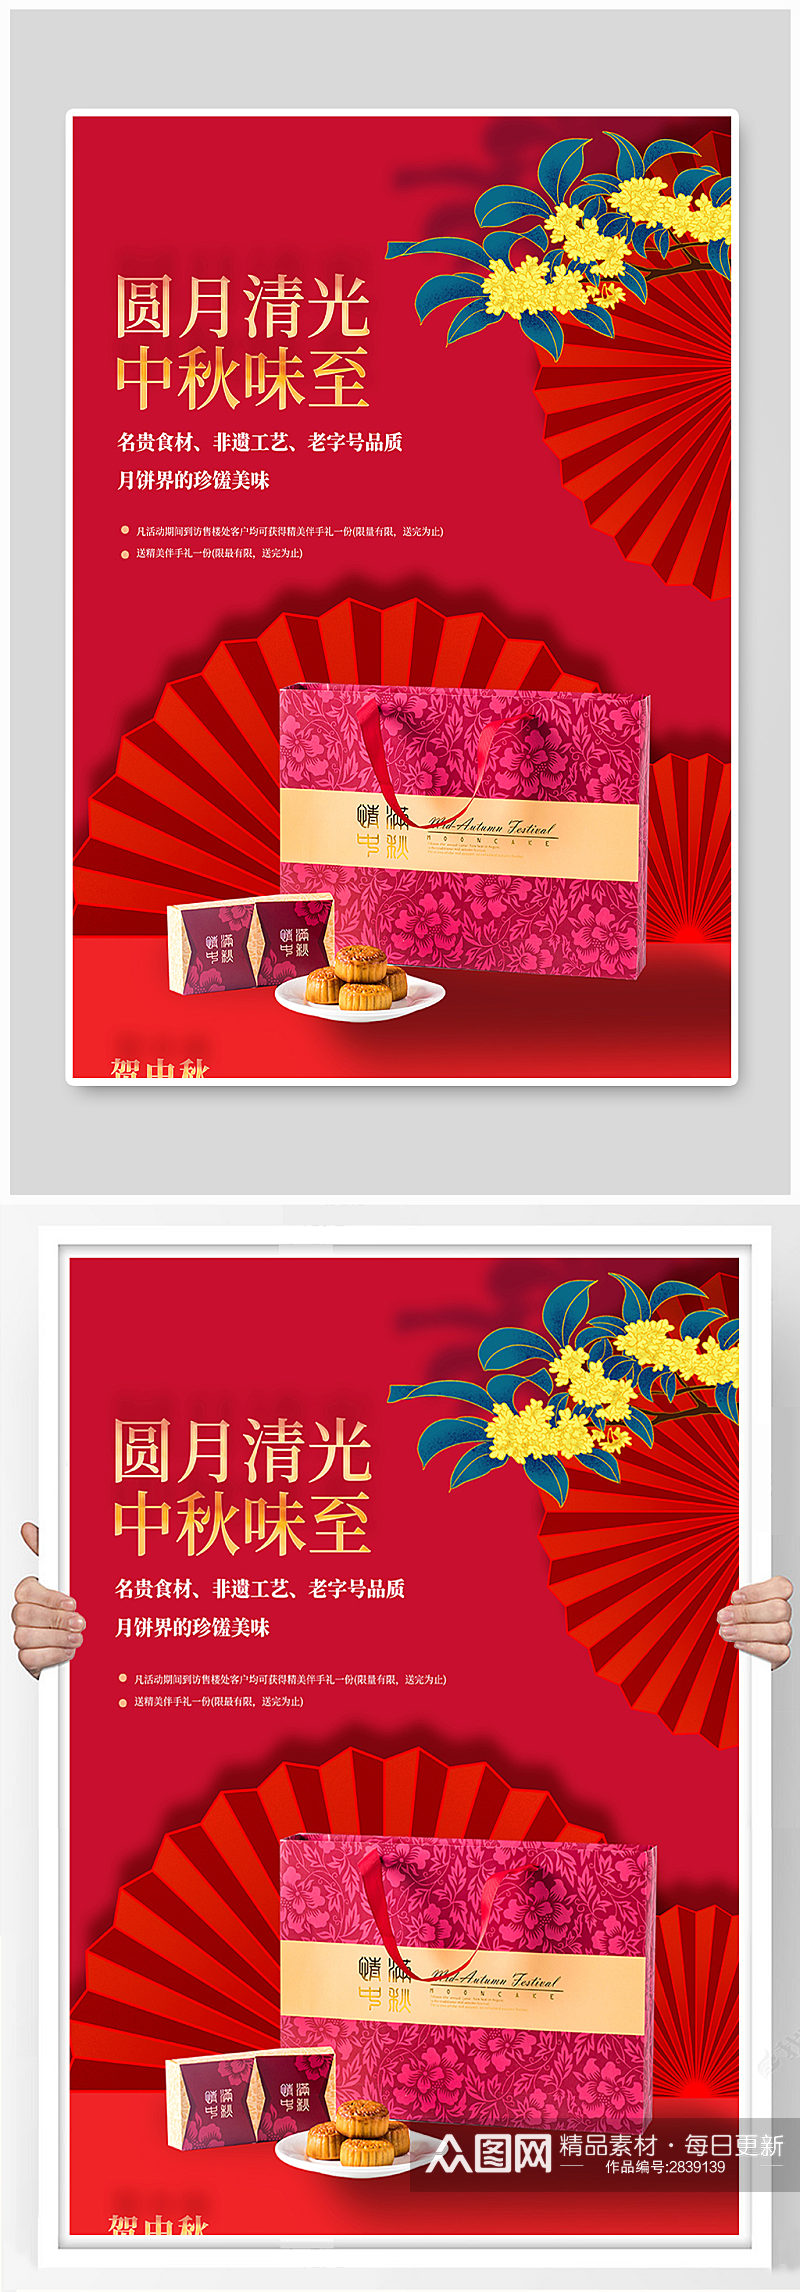 大气中秋节月饼礼盒促销宣传海报素材